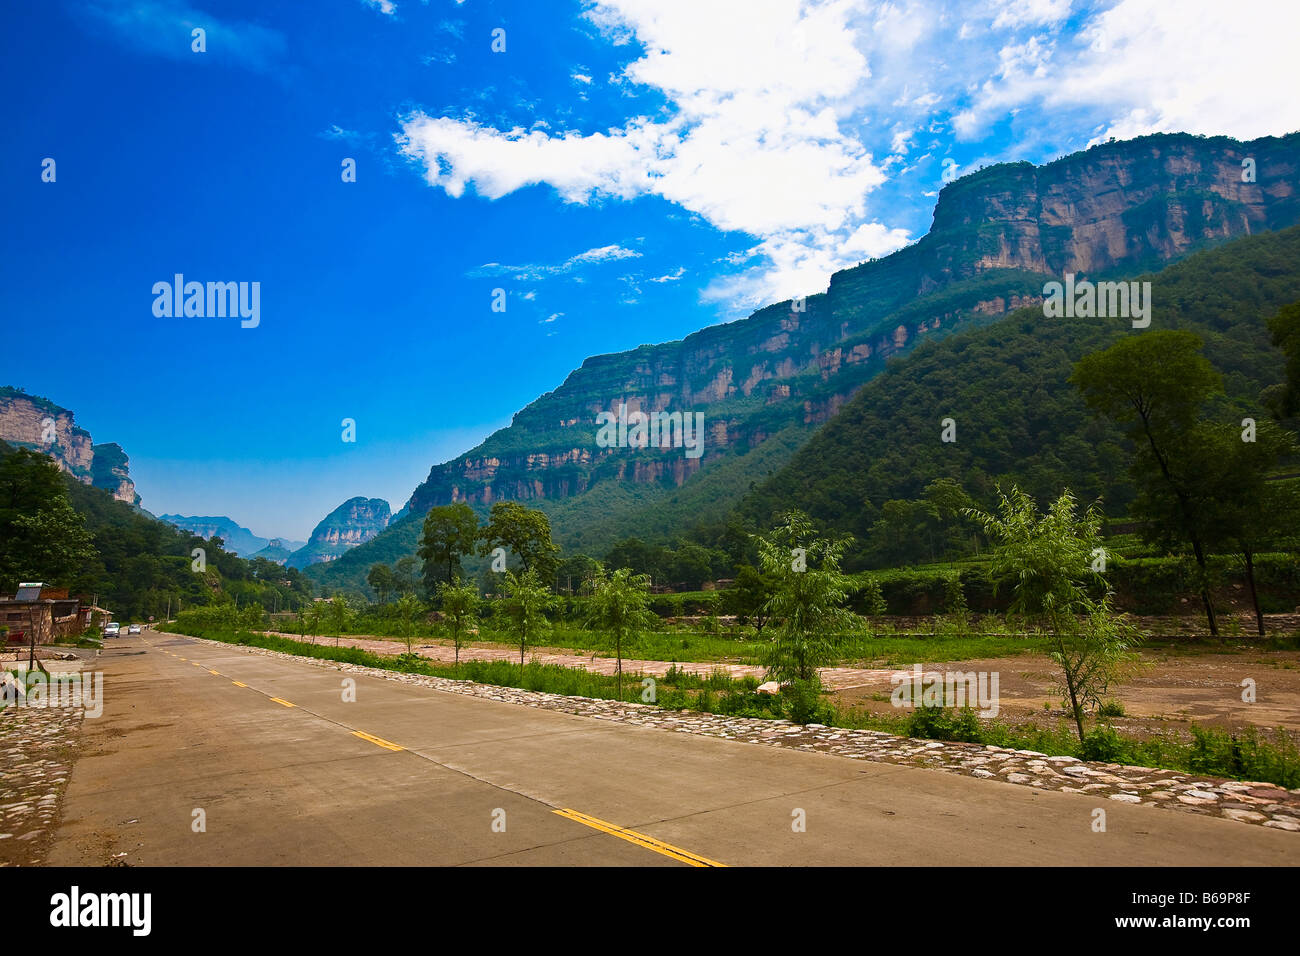 Plants along a road, Taihang Grand Canyon, Henan Province, China Stock Photo